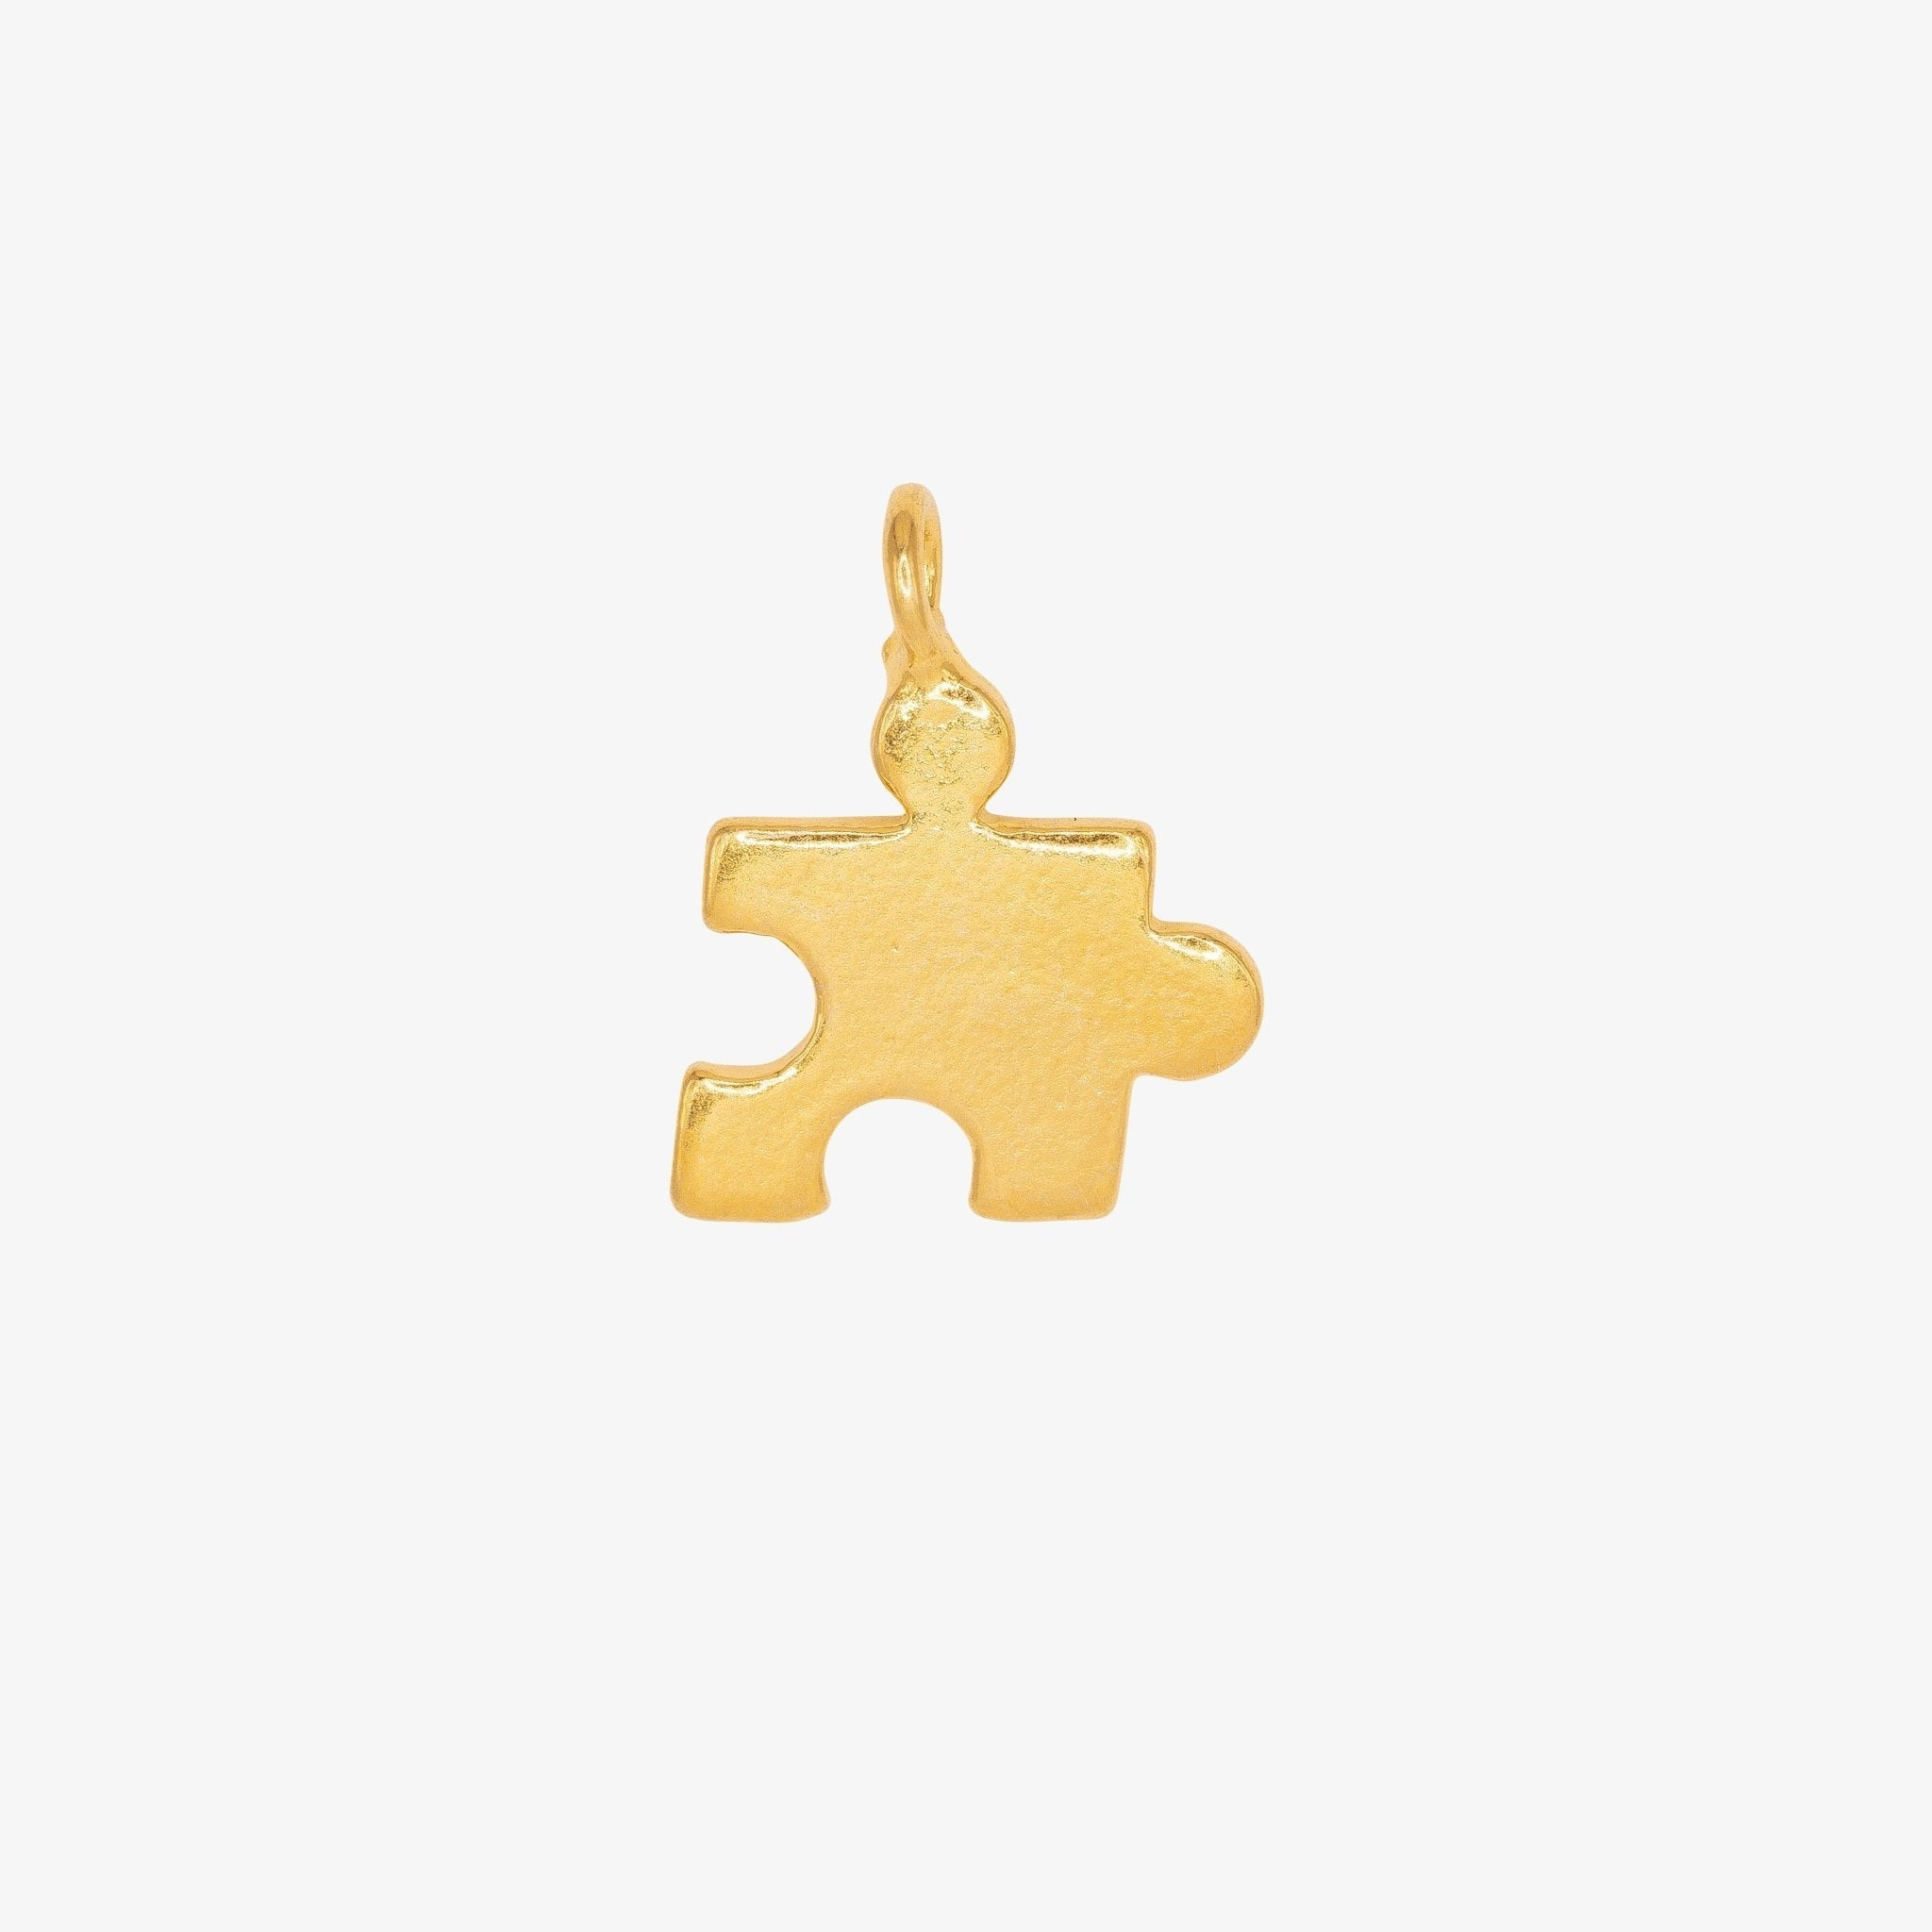 Puzzle Piece Charm 14K Gold - GoldandWillow